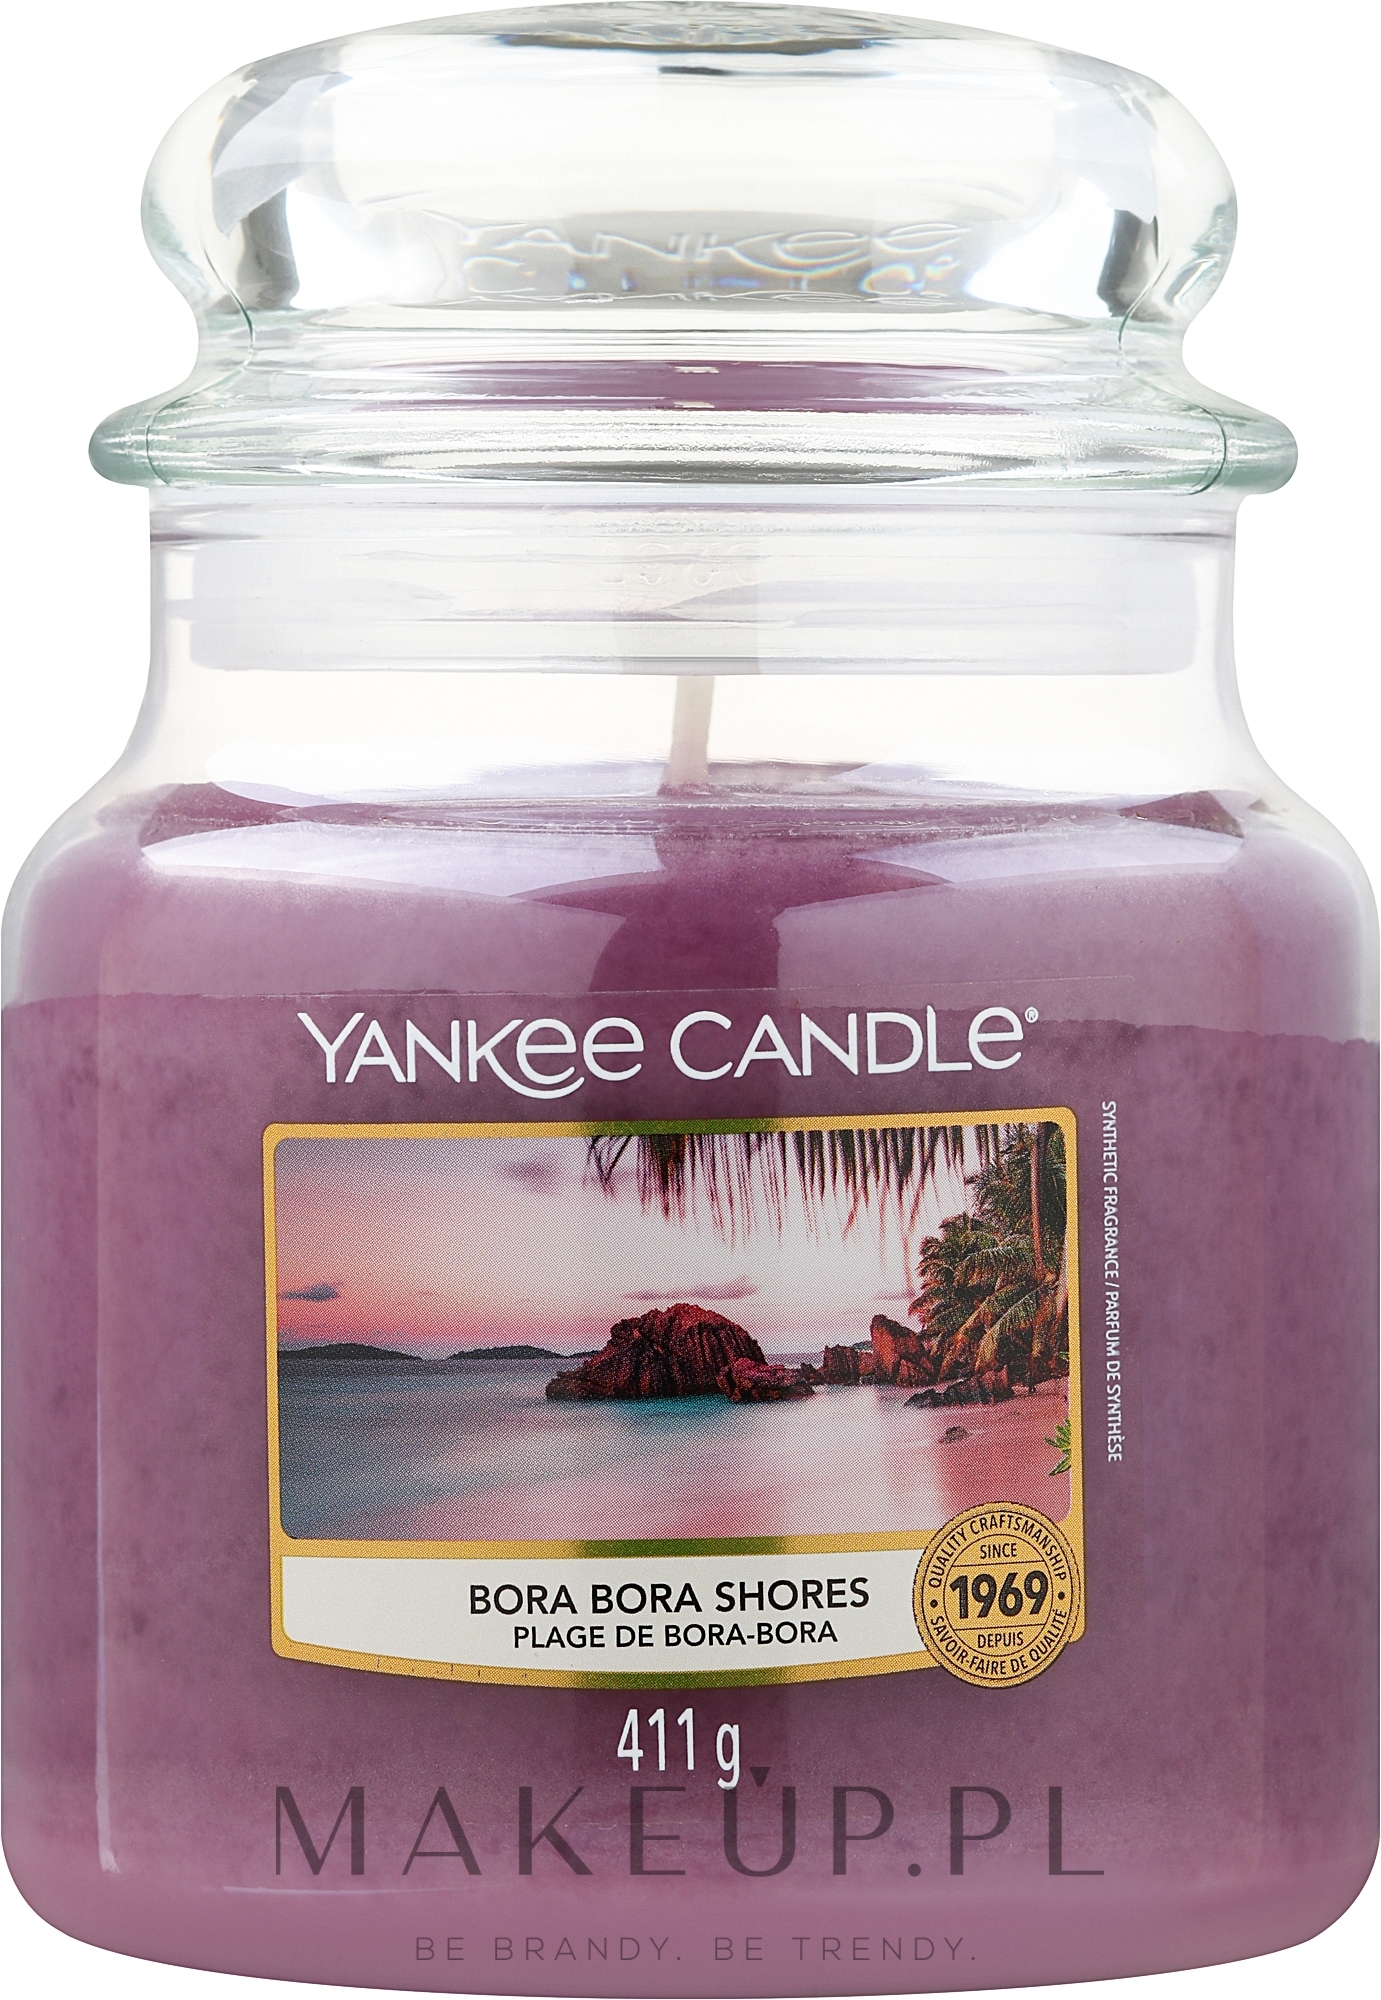 Świeca w szklanym słoju - Yankee Candle Bora Bora Shores Votive Candle — Zdjęcie 411 g